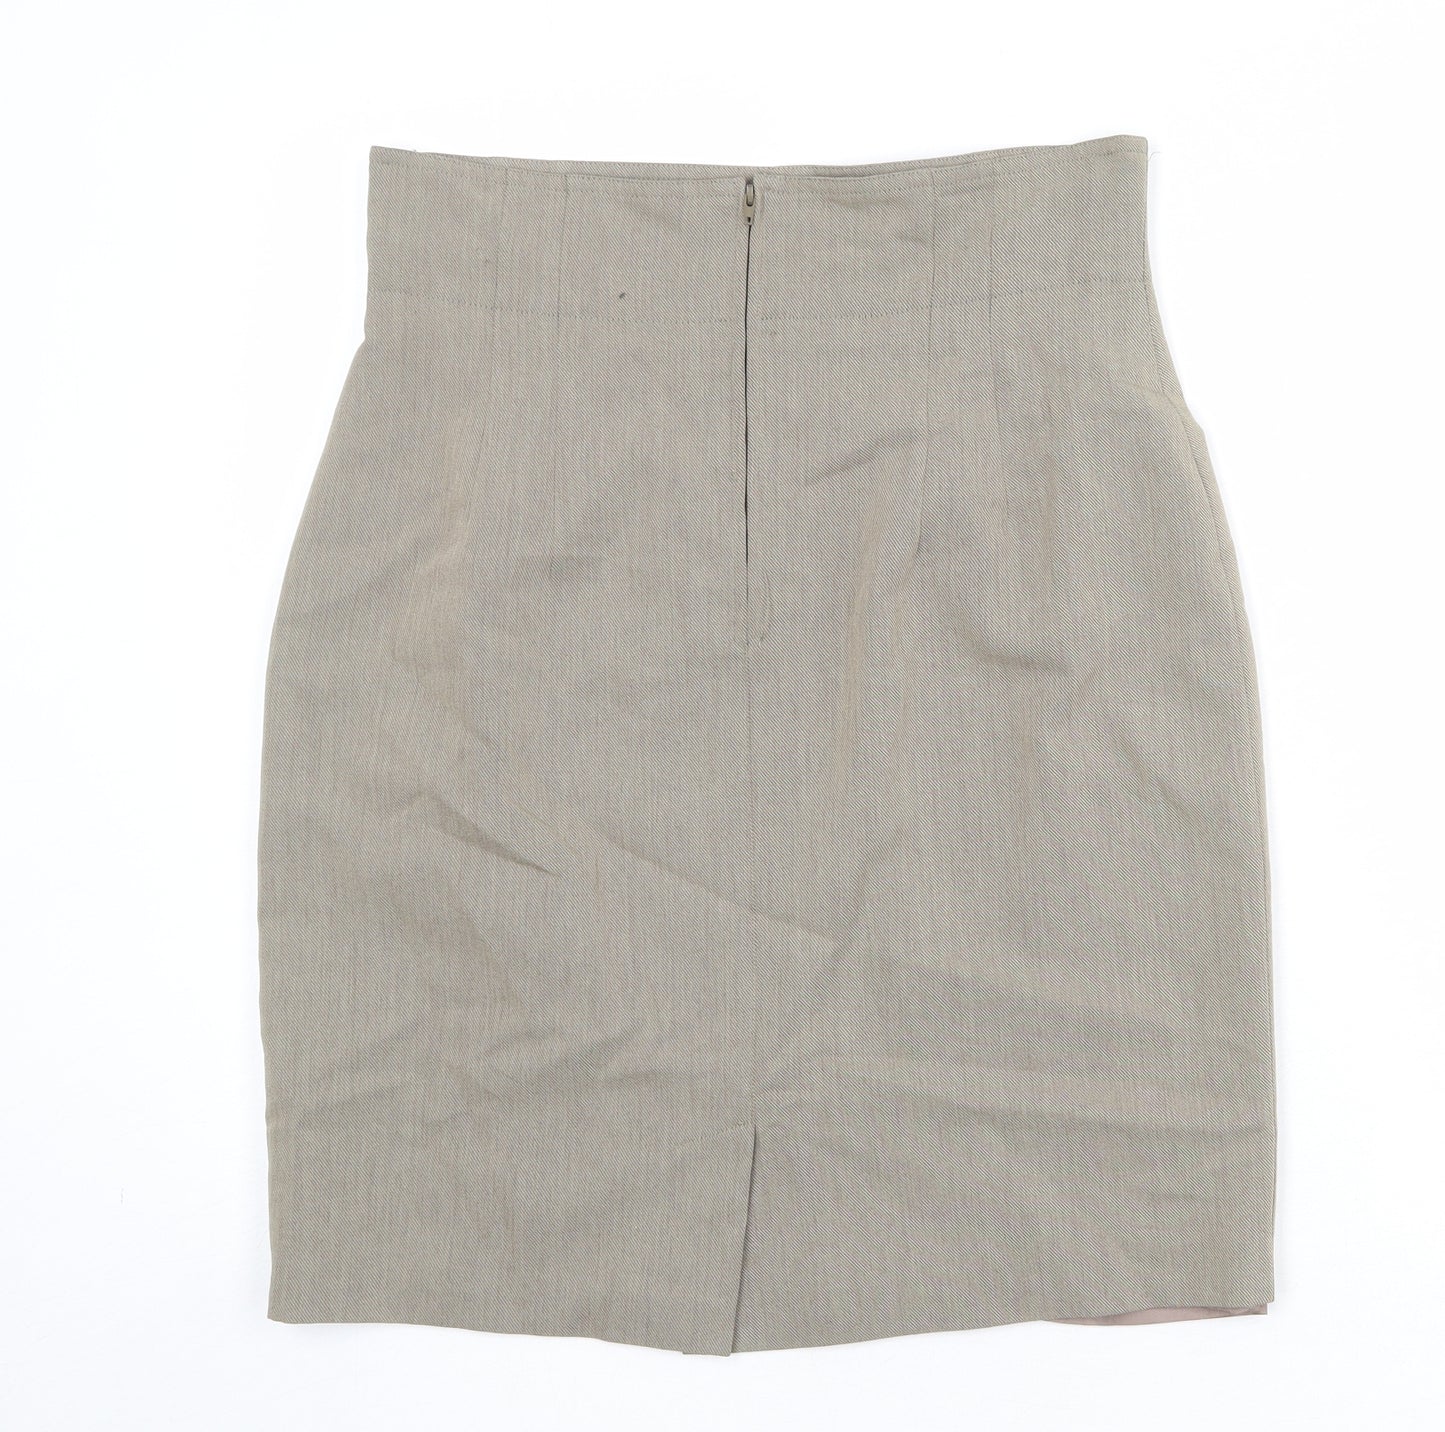 Cartoon Womens Beige Viscose A-Line Skirt Size 14 Zip